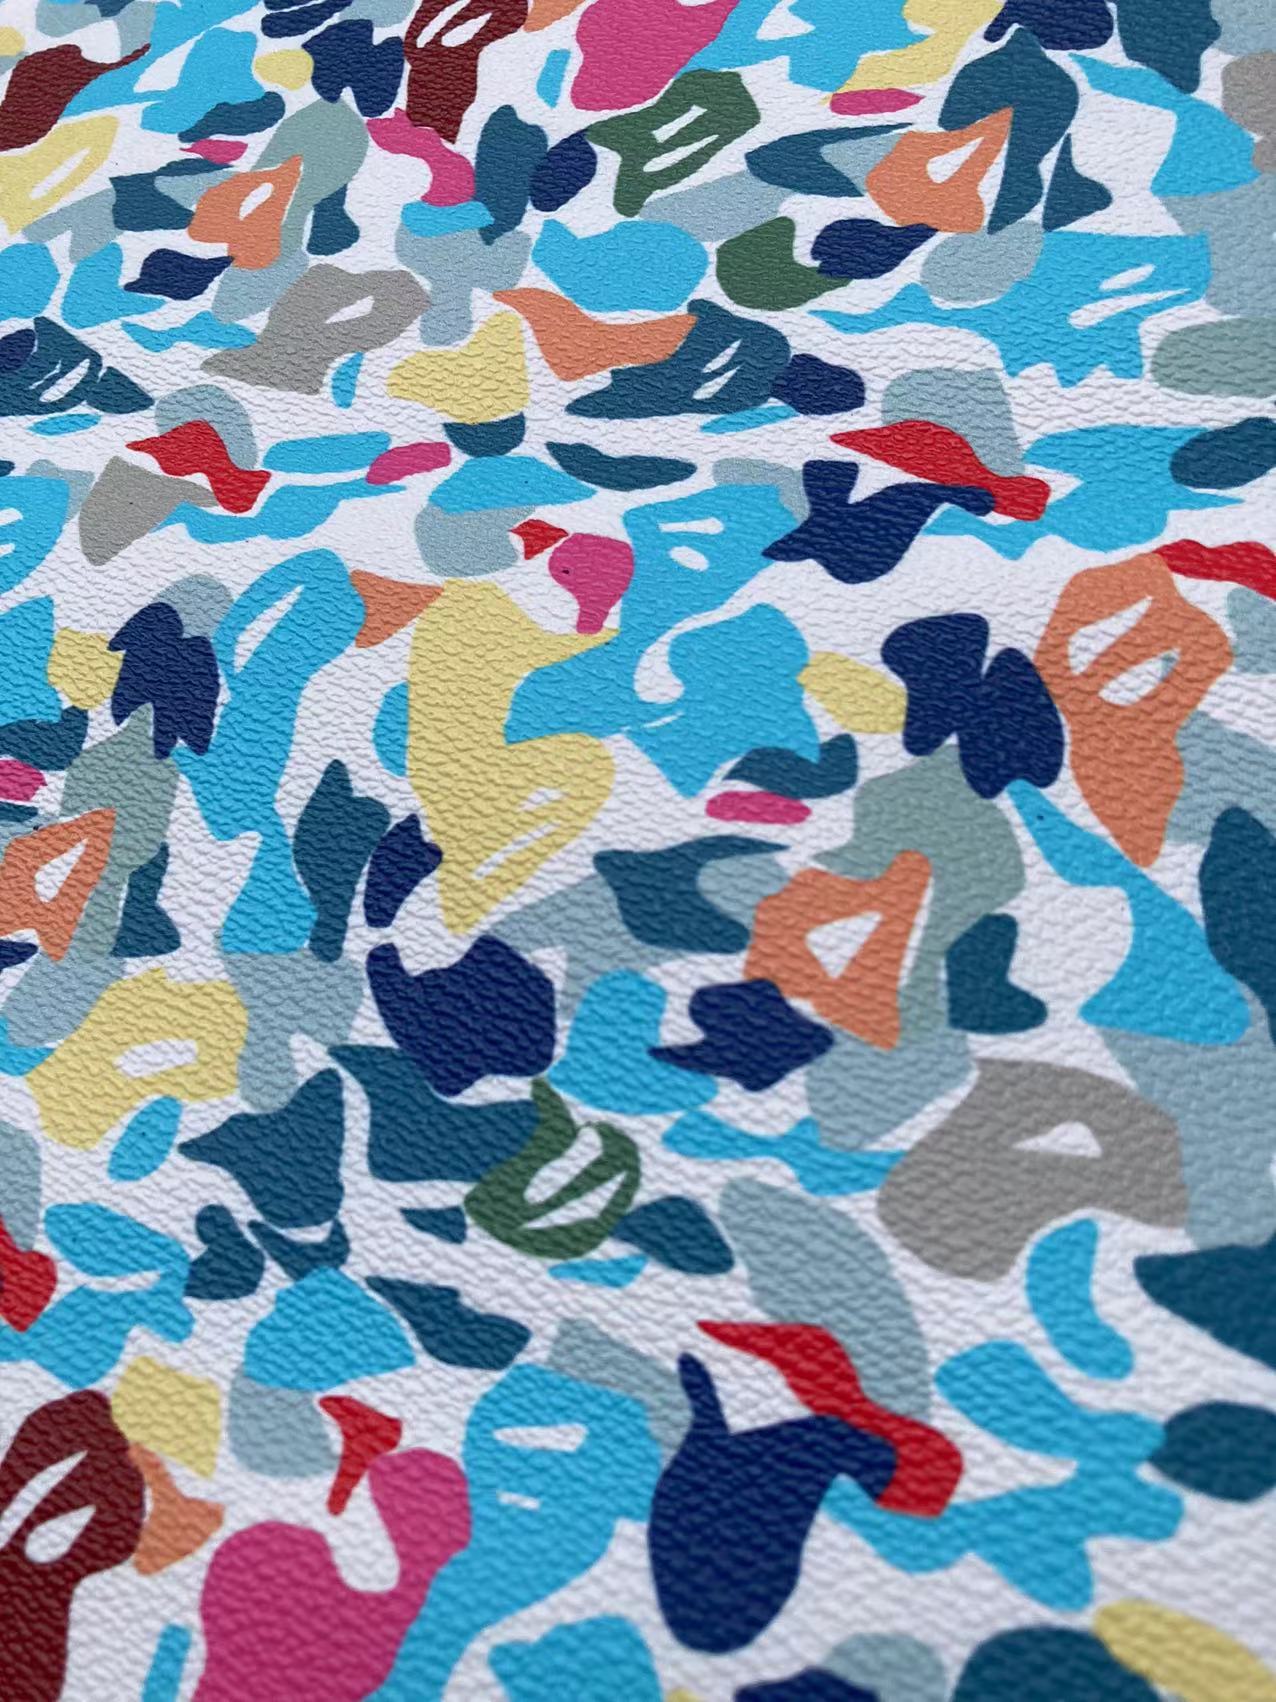 New Colorful Bape for Custom Sneakers Wallpaper Interior DIY